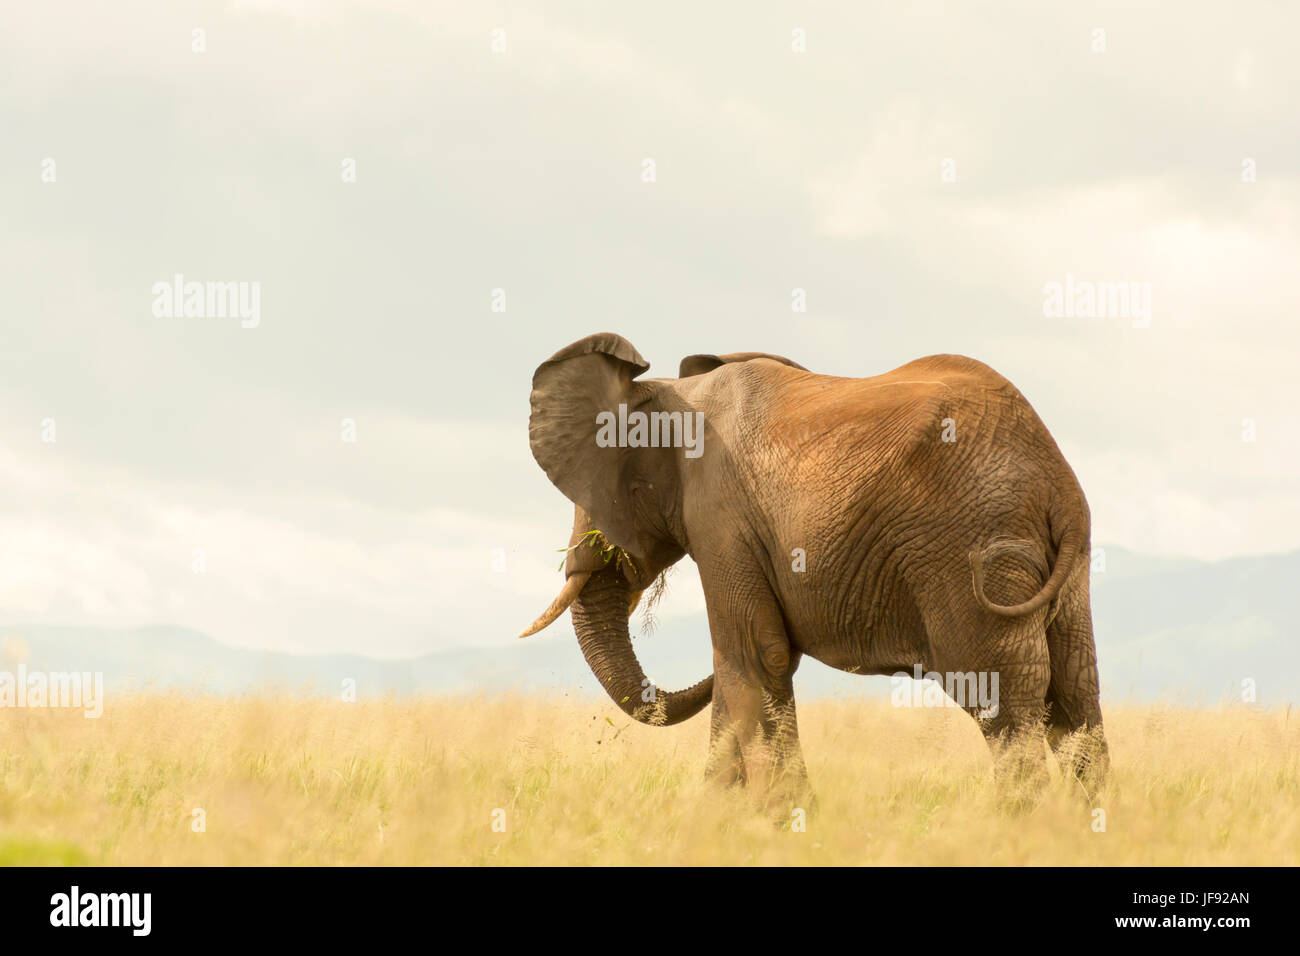 Elefante africano mirando a lo lejos, en el Parque Nacional Tarangire, Tanzania. Comiendo hierba en el campo de gramíneas, soplando suave. Foto de stock